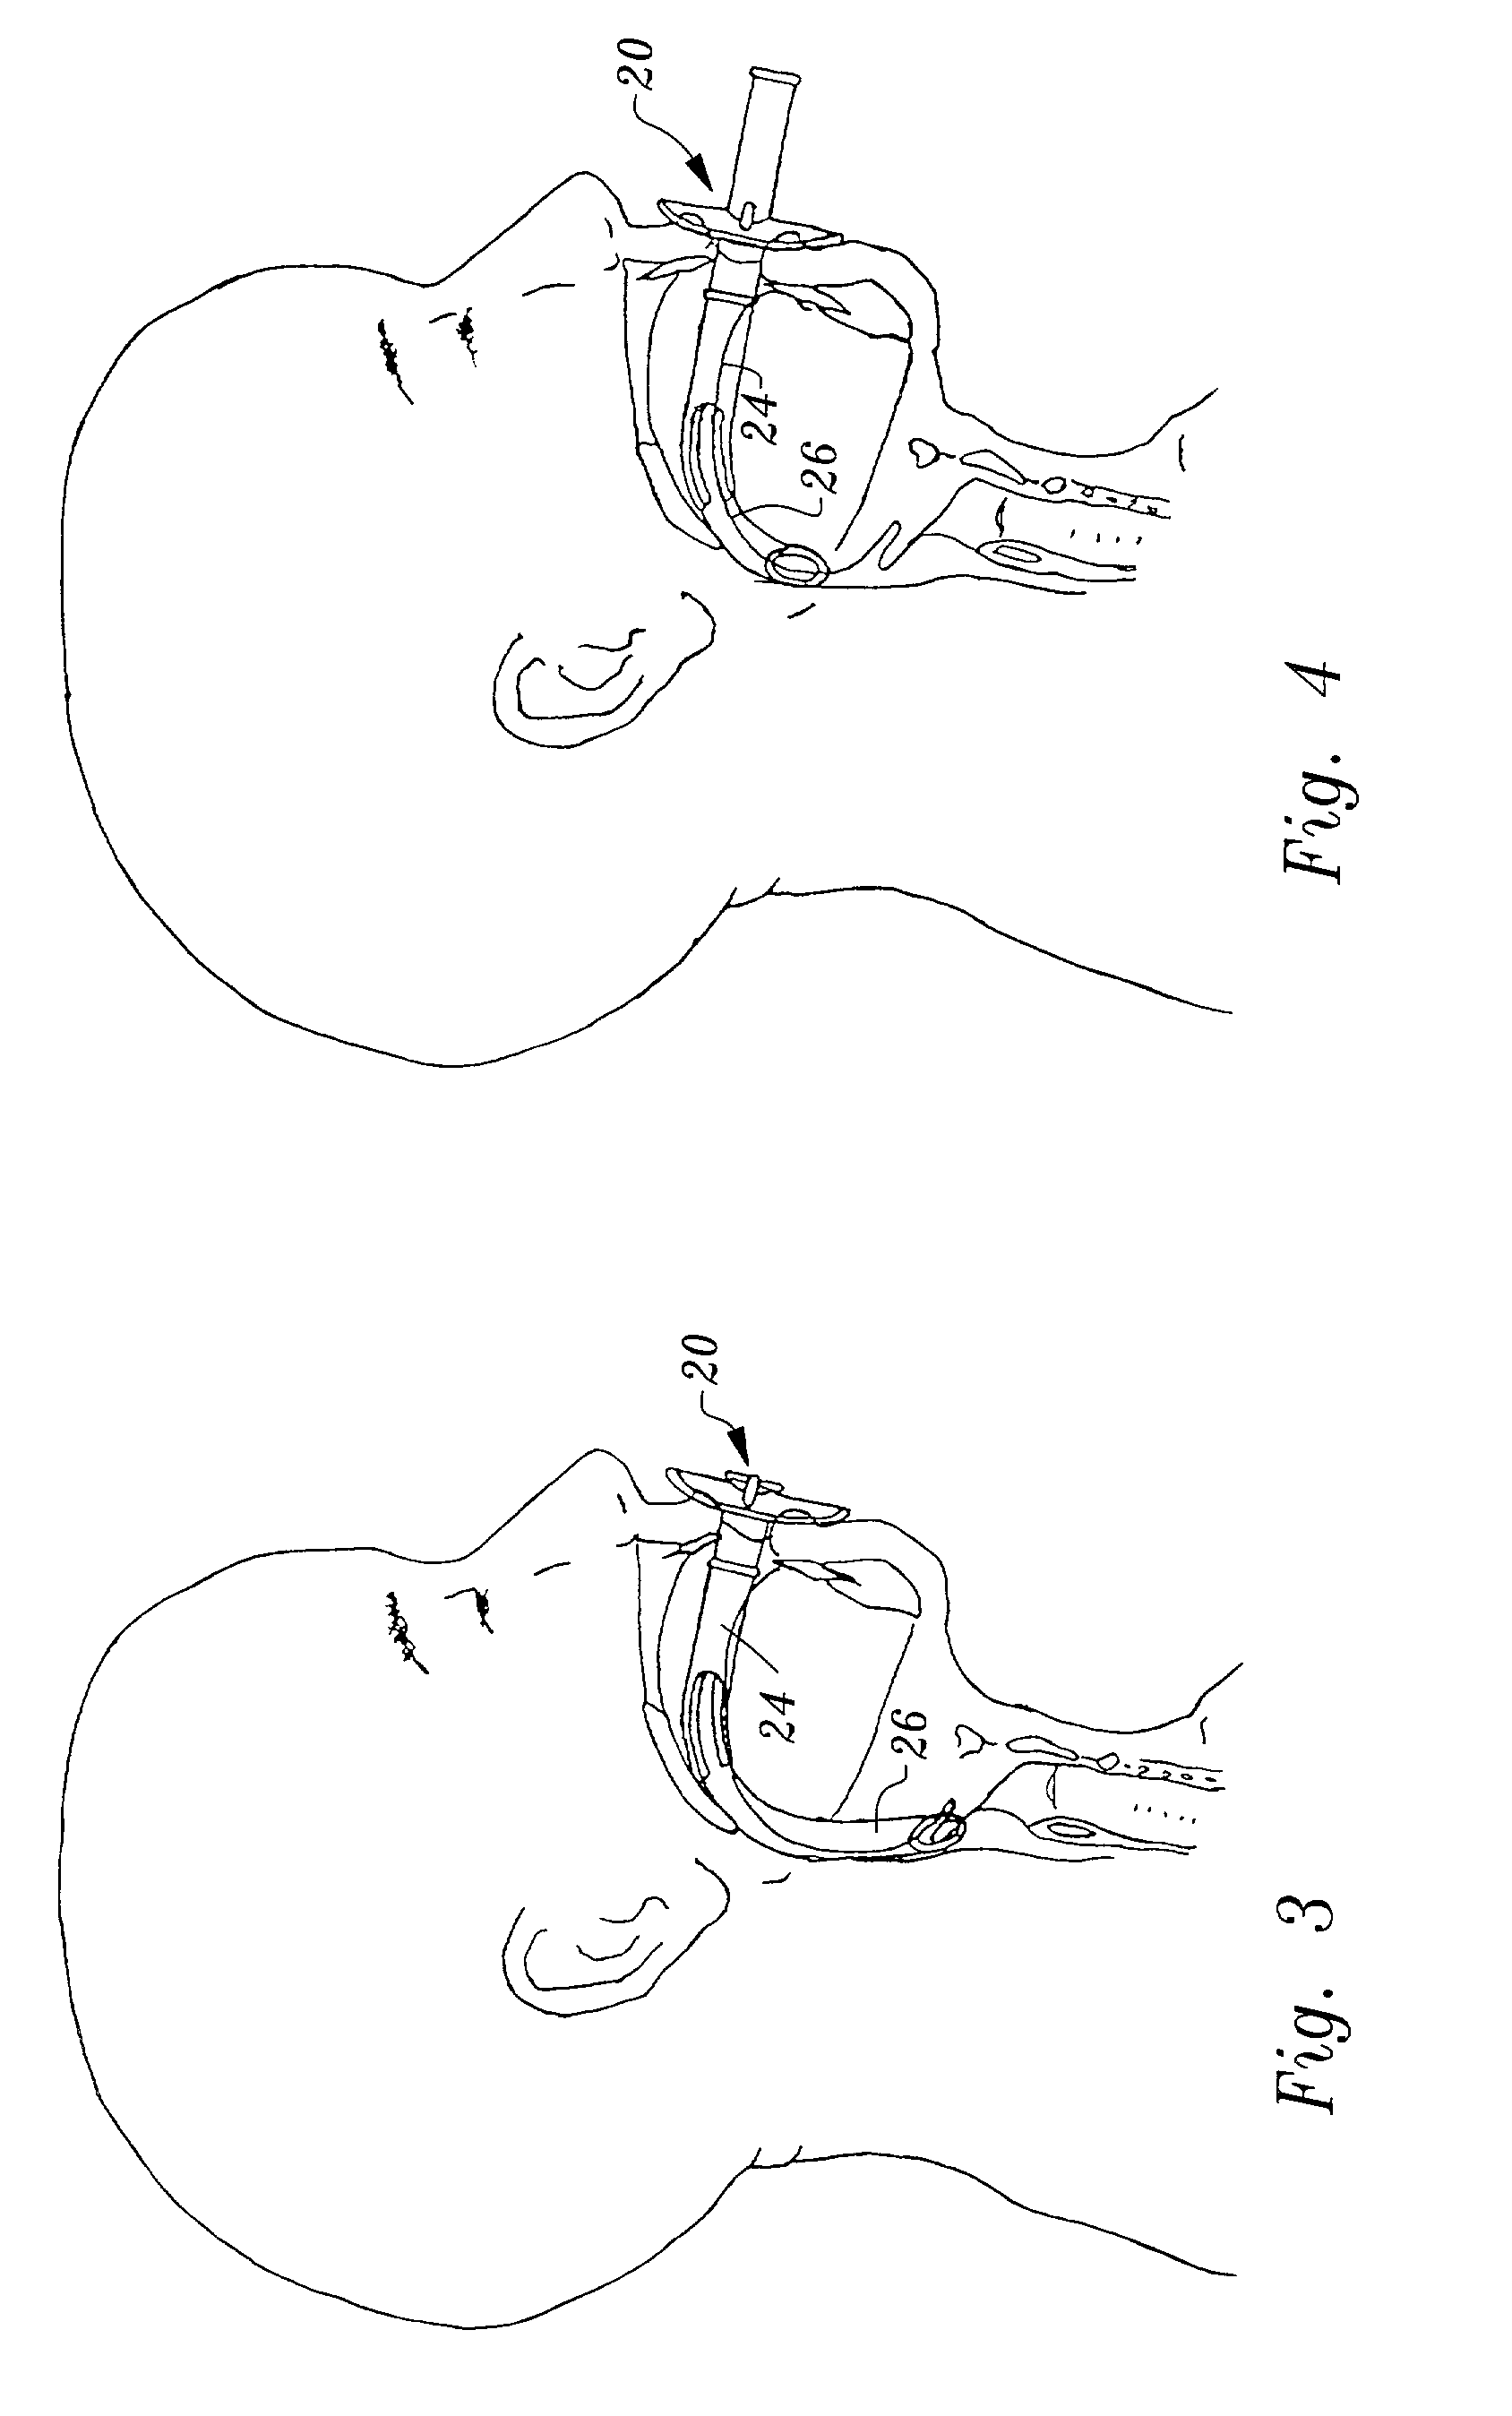 Adjustable oropharyngeal airway apparatus